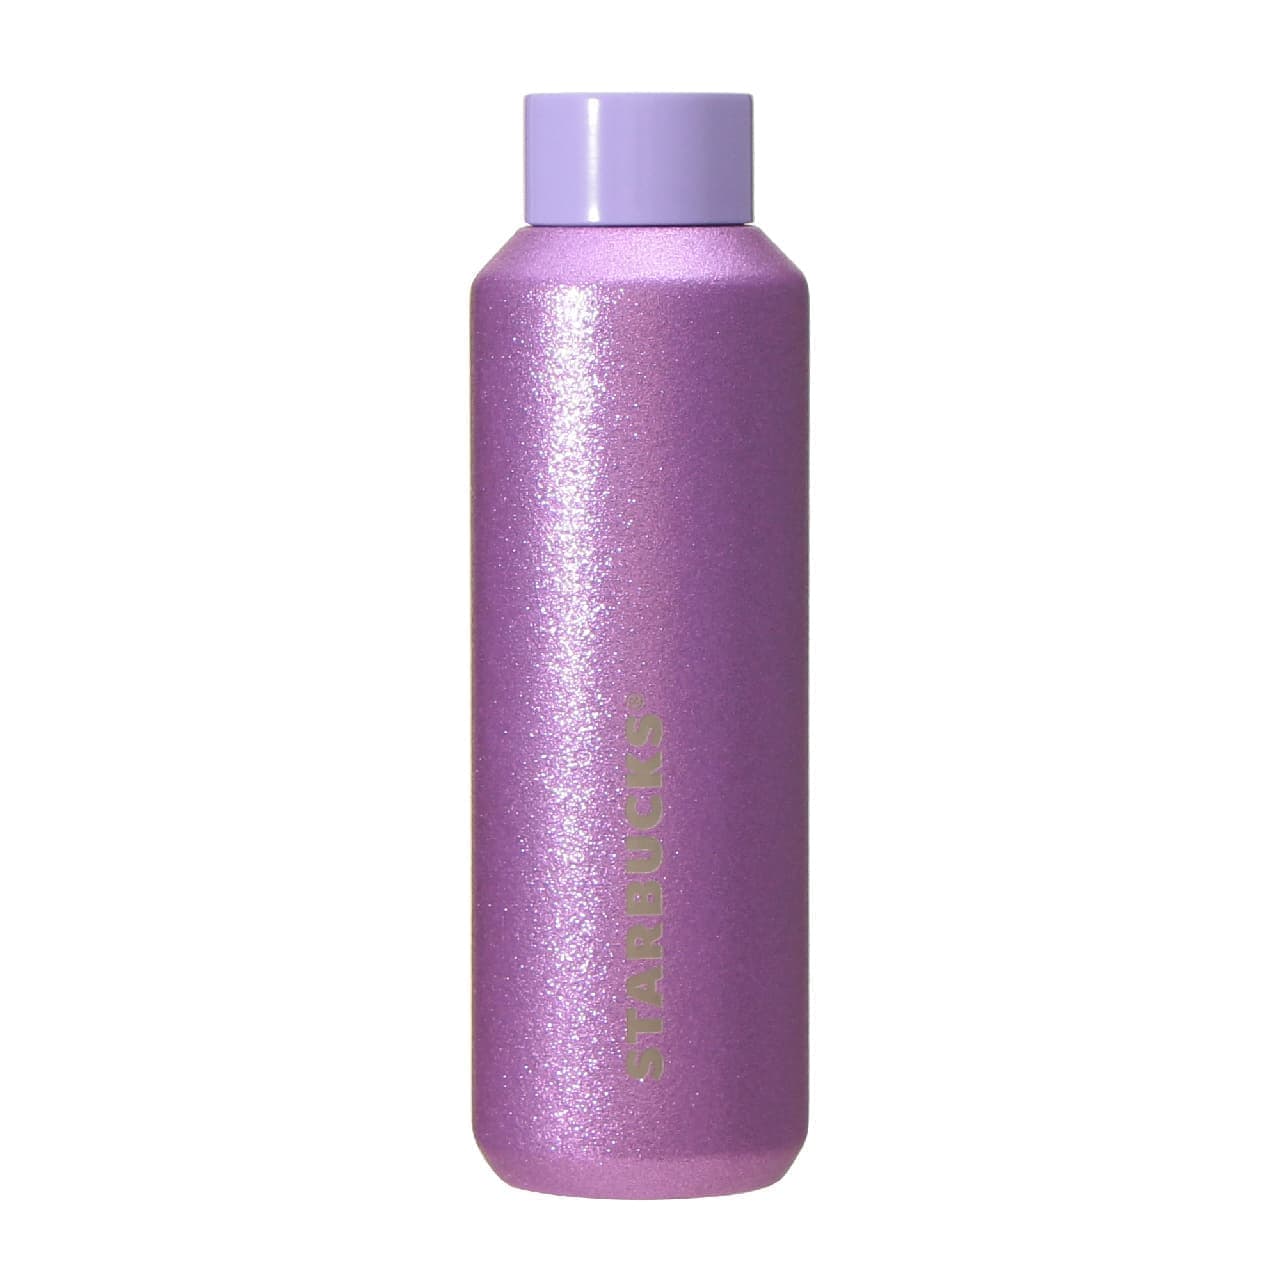 Stainless steel bottle glitter purple 591ml